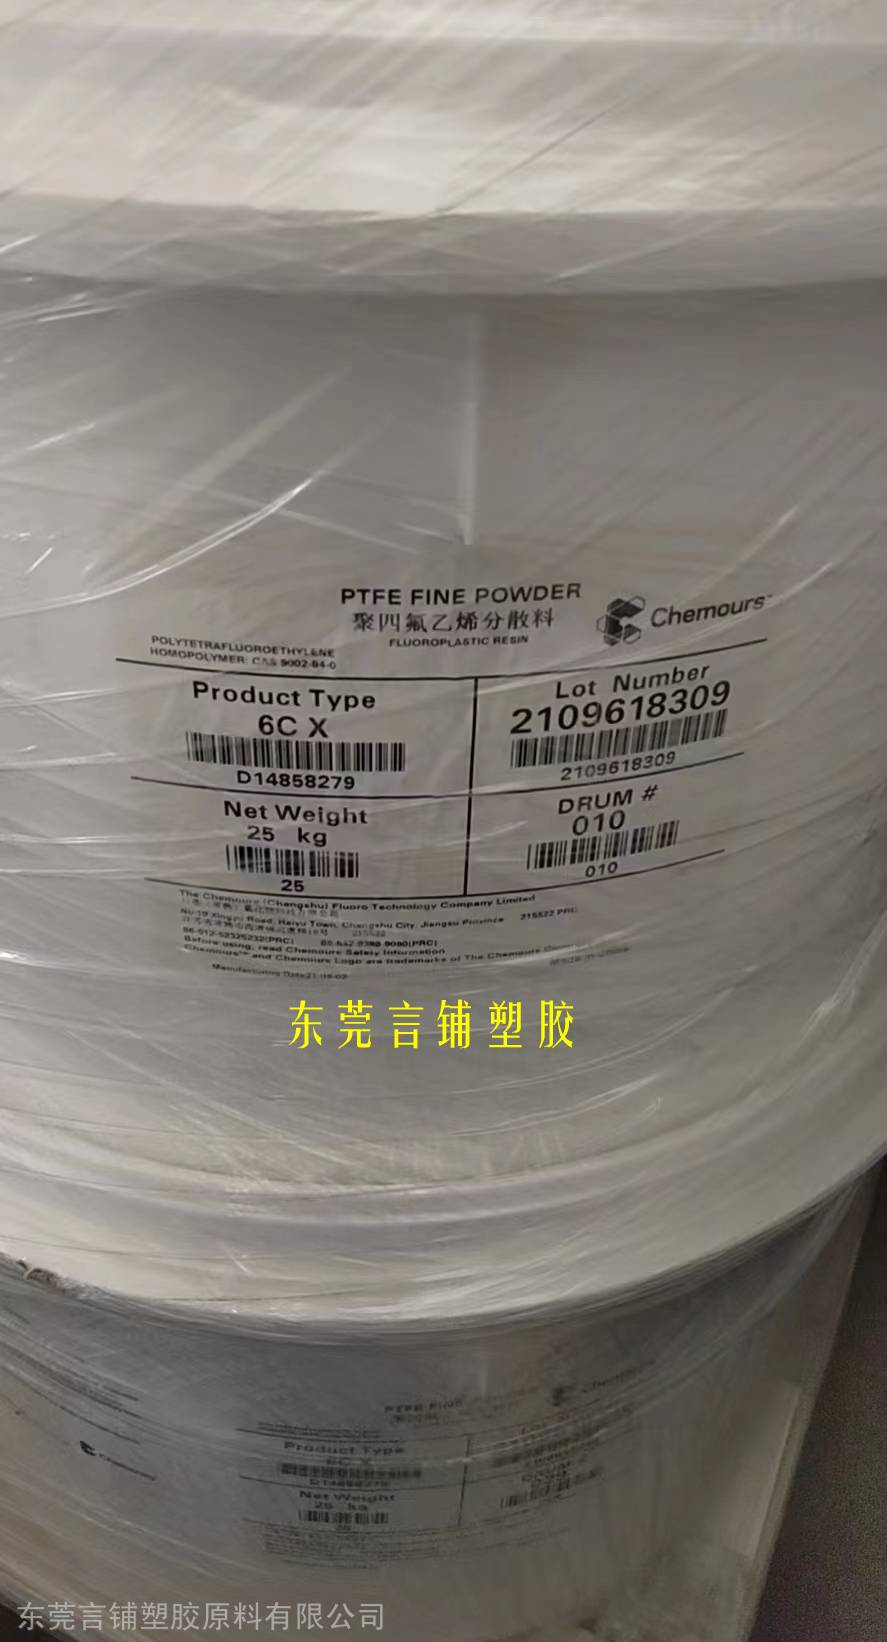 出售PTFE美国科慕6CX聚四氟乙烯分散粉